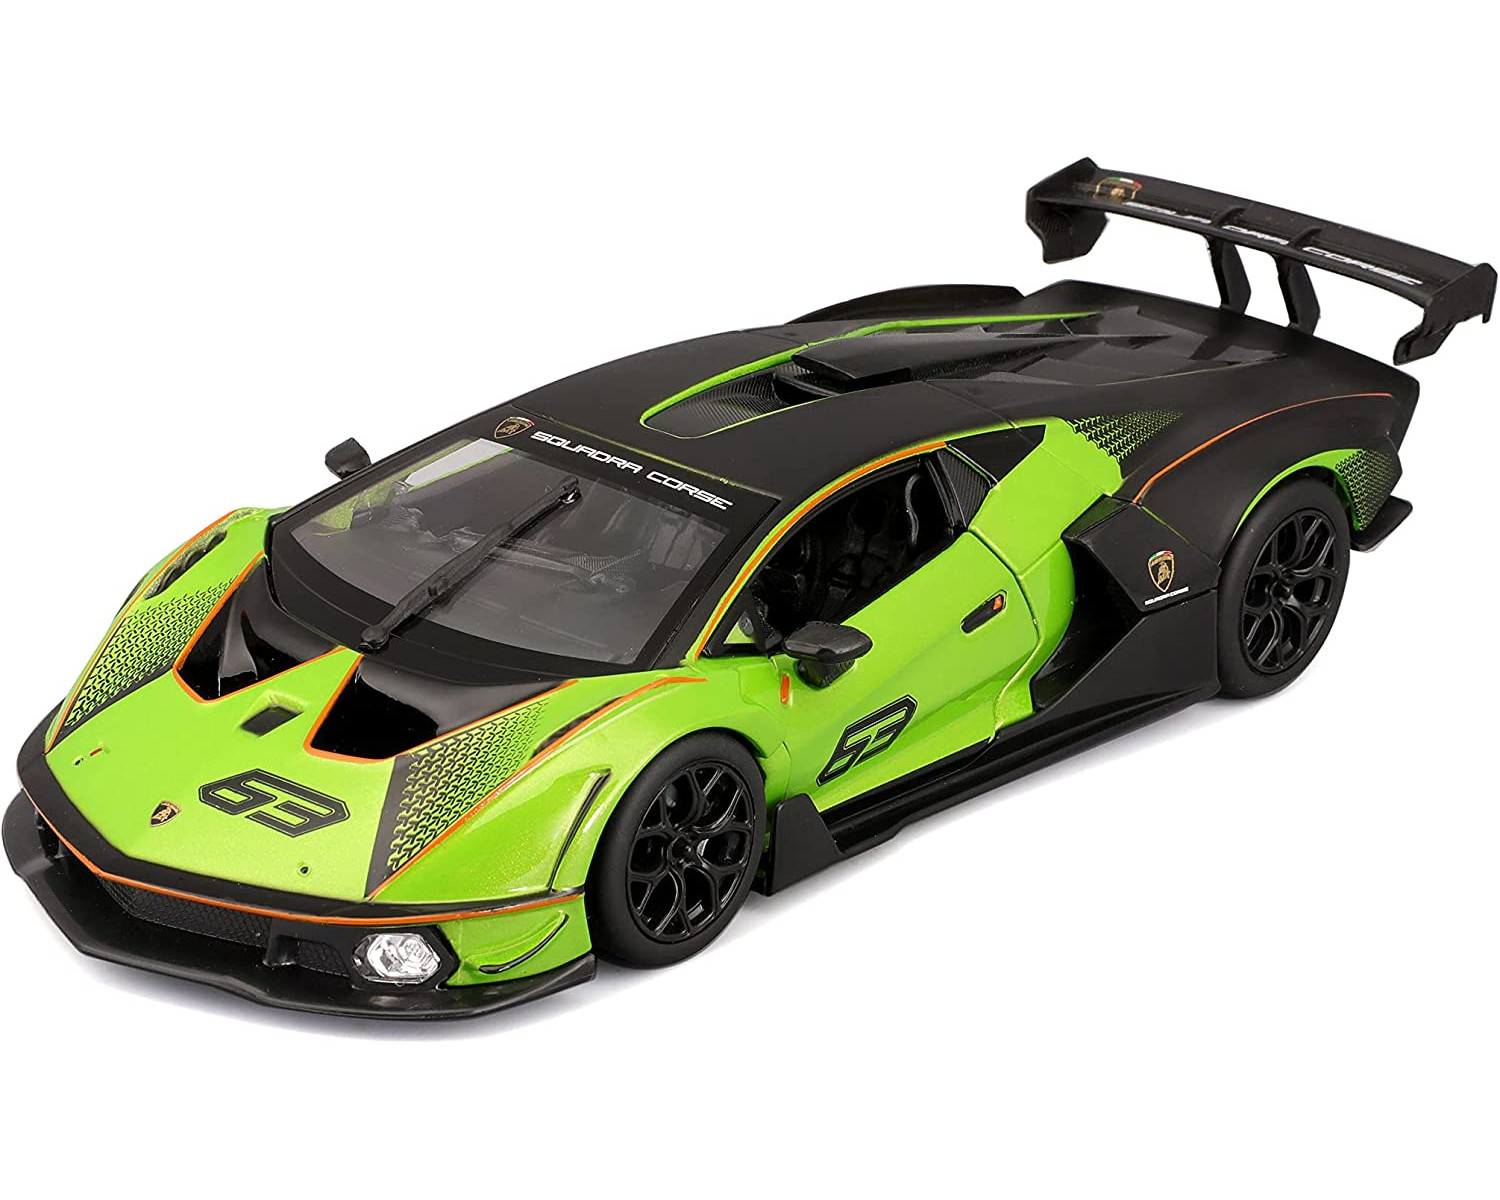 SCV12 Spielzeugauto Modellauto Lamborghini (grün, Maßstab - Essenza BBURAGO - 18-28017 1:24)